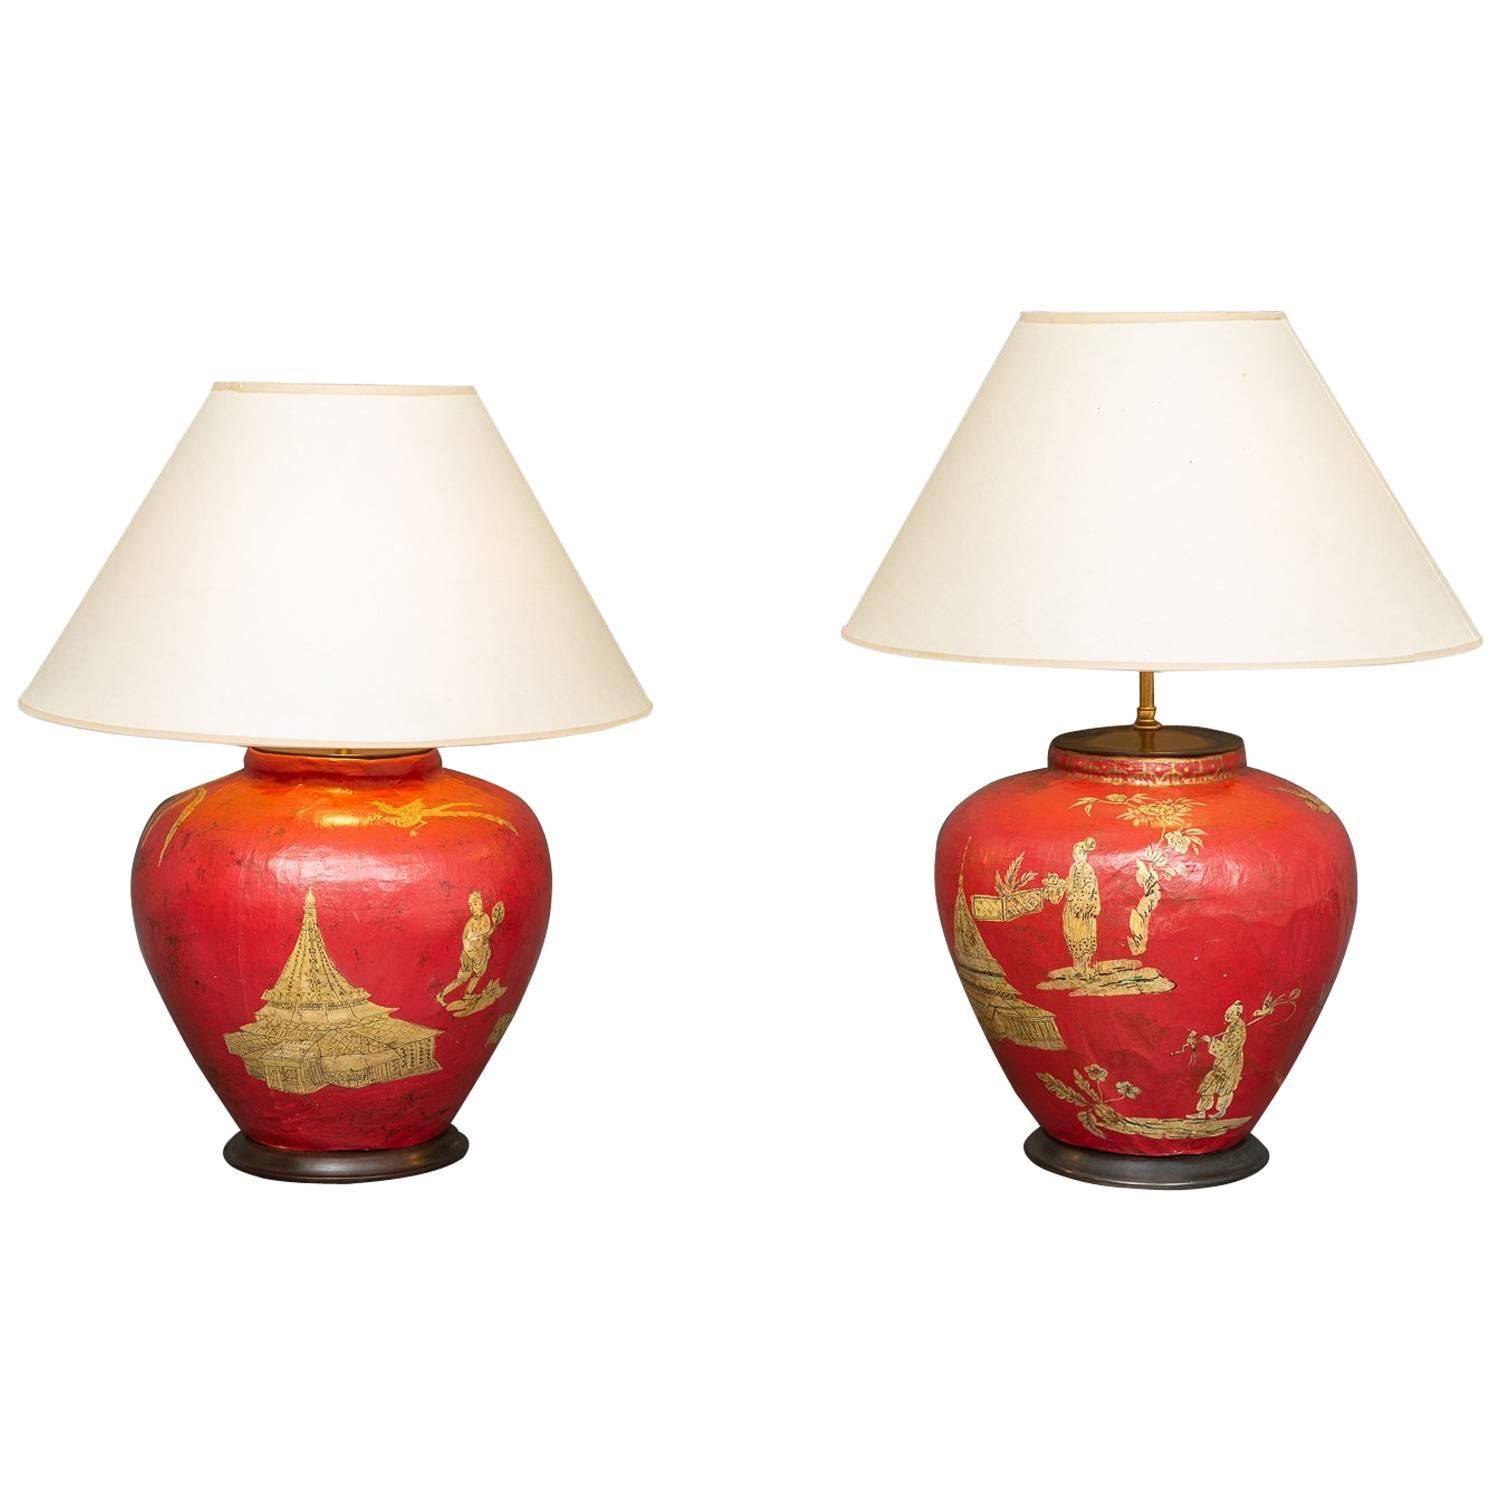 Paar handgefertigte Pariser Hadley-Chinoiserie-Lampen, dekoriert